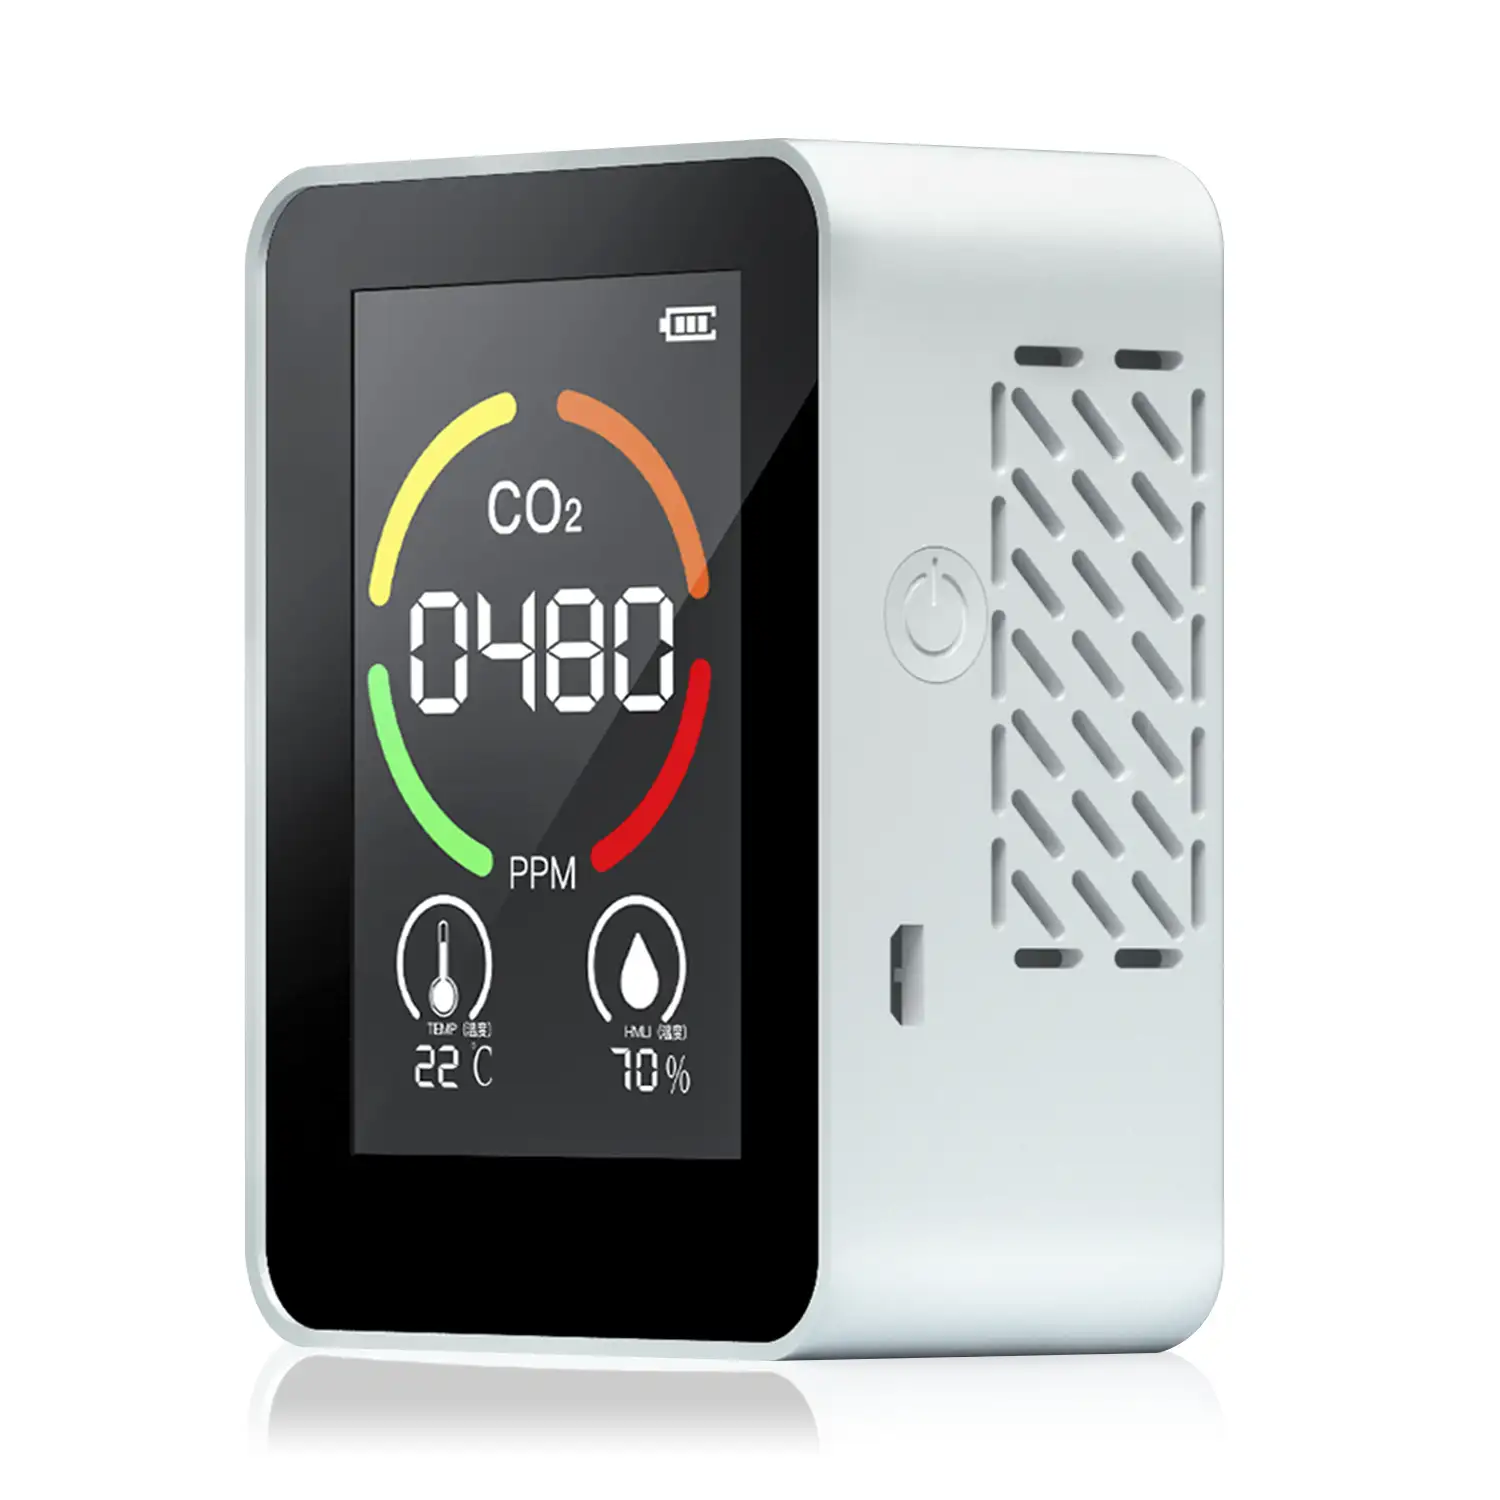 Monitor de calidad de aire para interior. Detección de CO2, con alarma sonora y visual. Termómetro, TVOC e higrómetro.